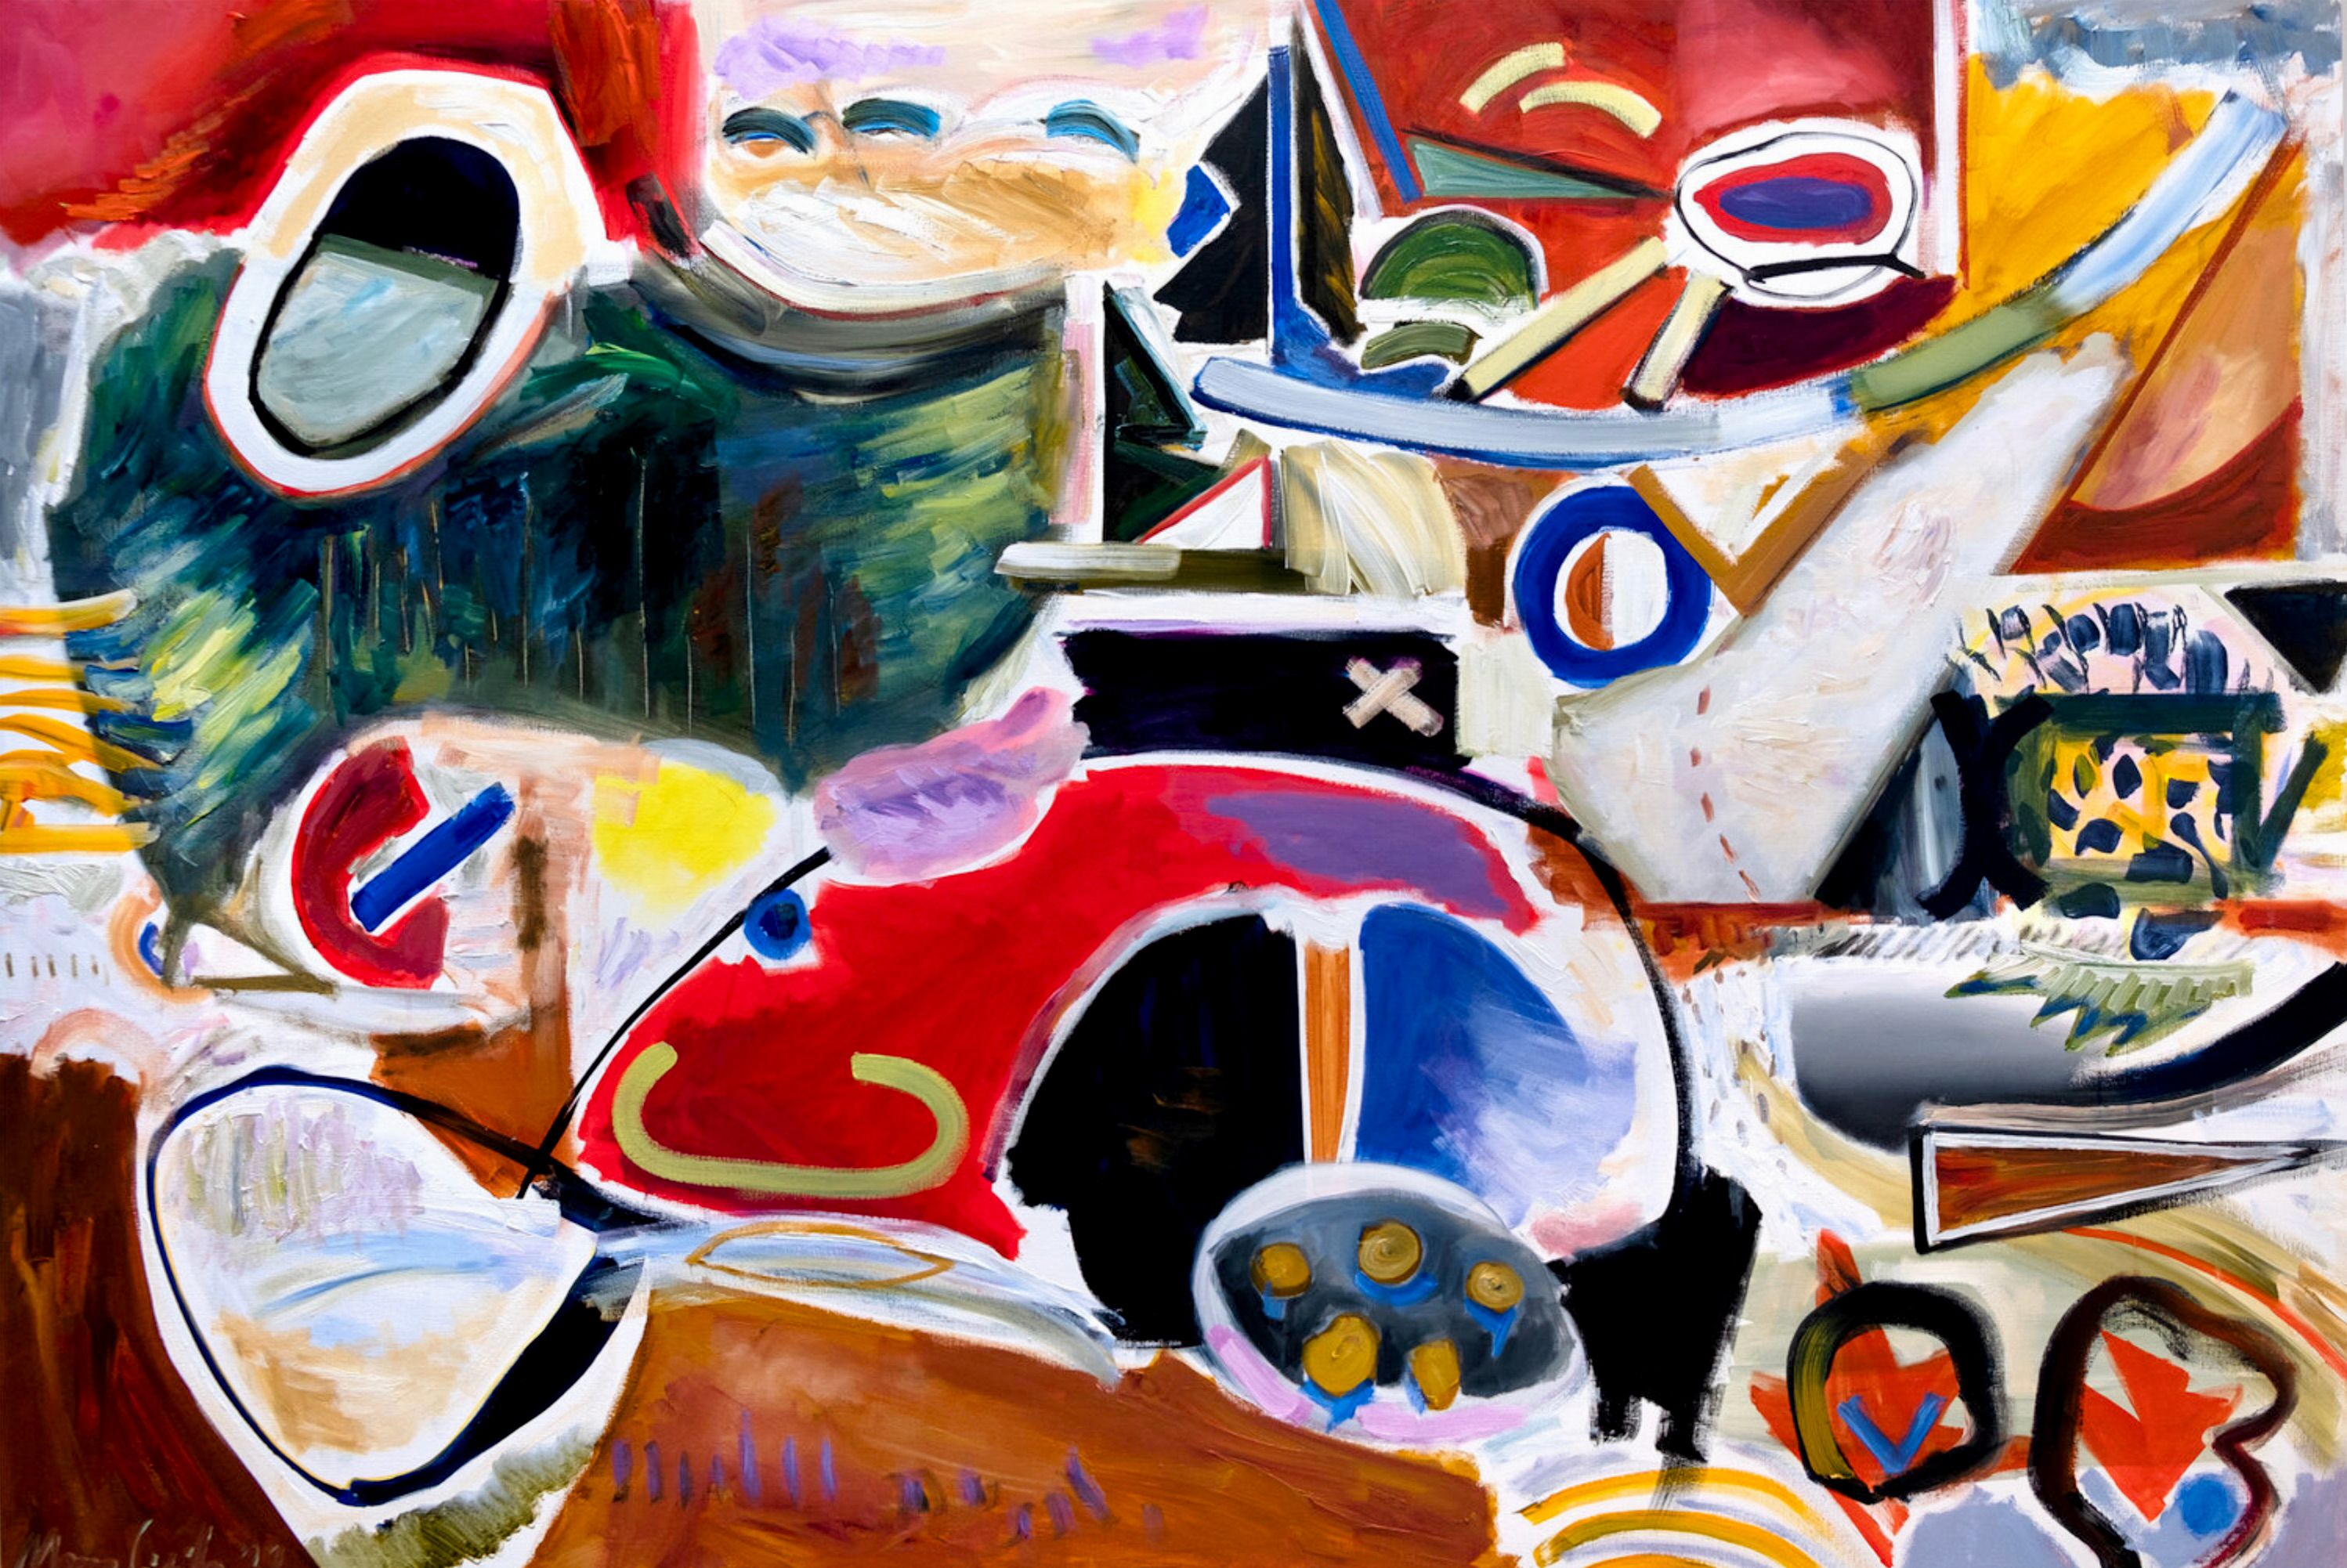 MECESLA Maciej Cieśla, "受自然启发的抽象", 画布上的抽象彩色绘画